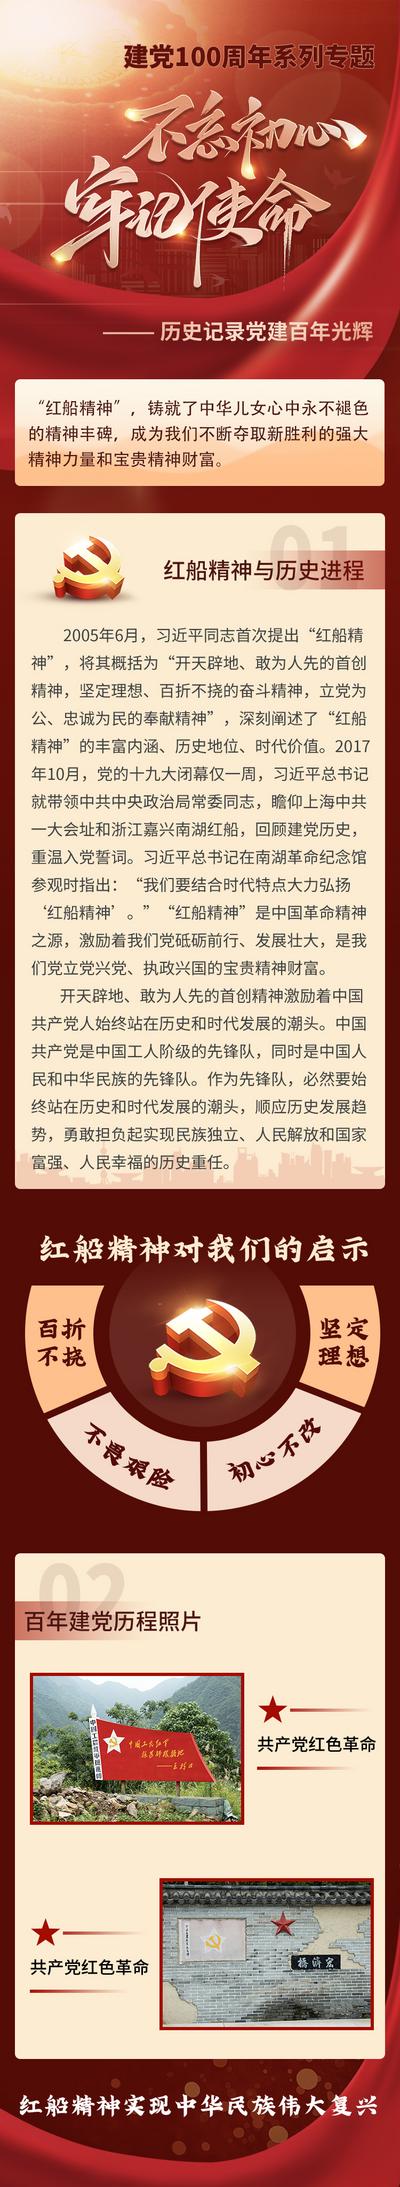 南门网 专题设计 长图 红色 爱国 建党百年 历史记录